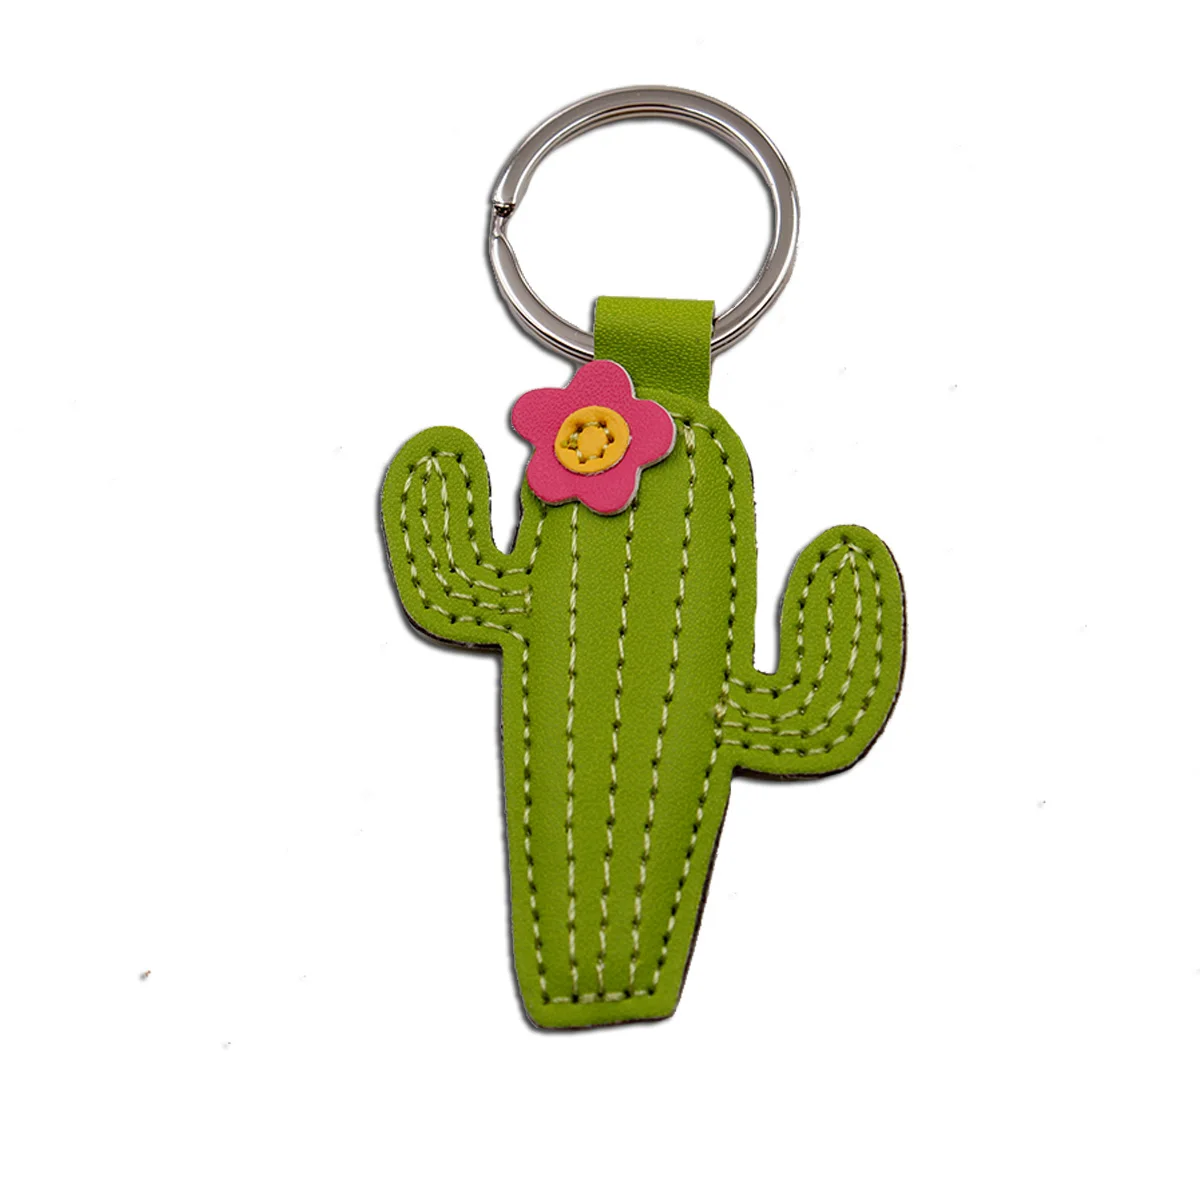 Saguaro Cactus Tassel Keychain